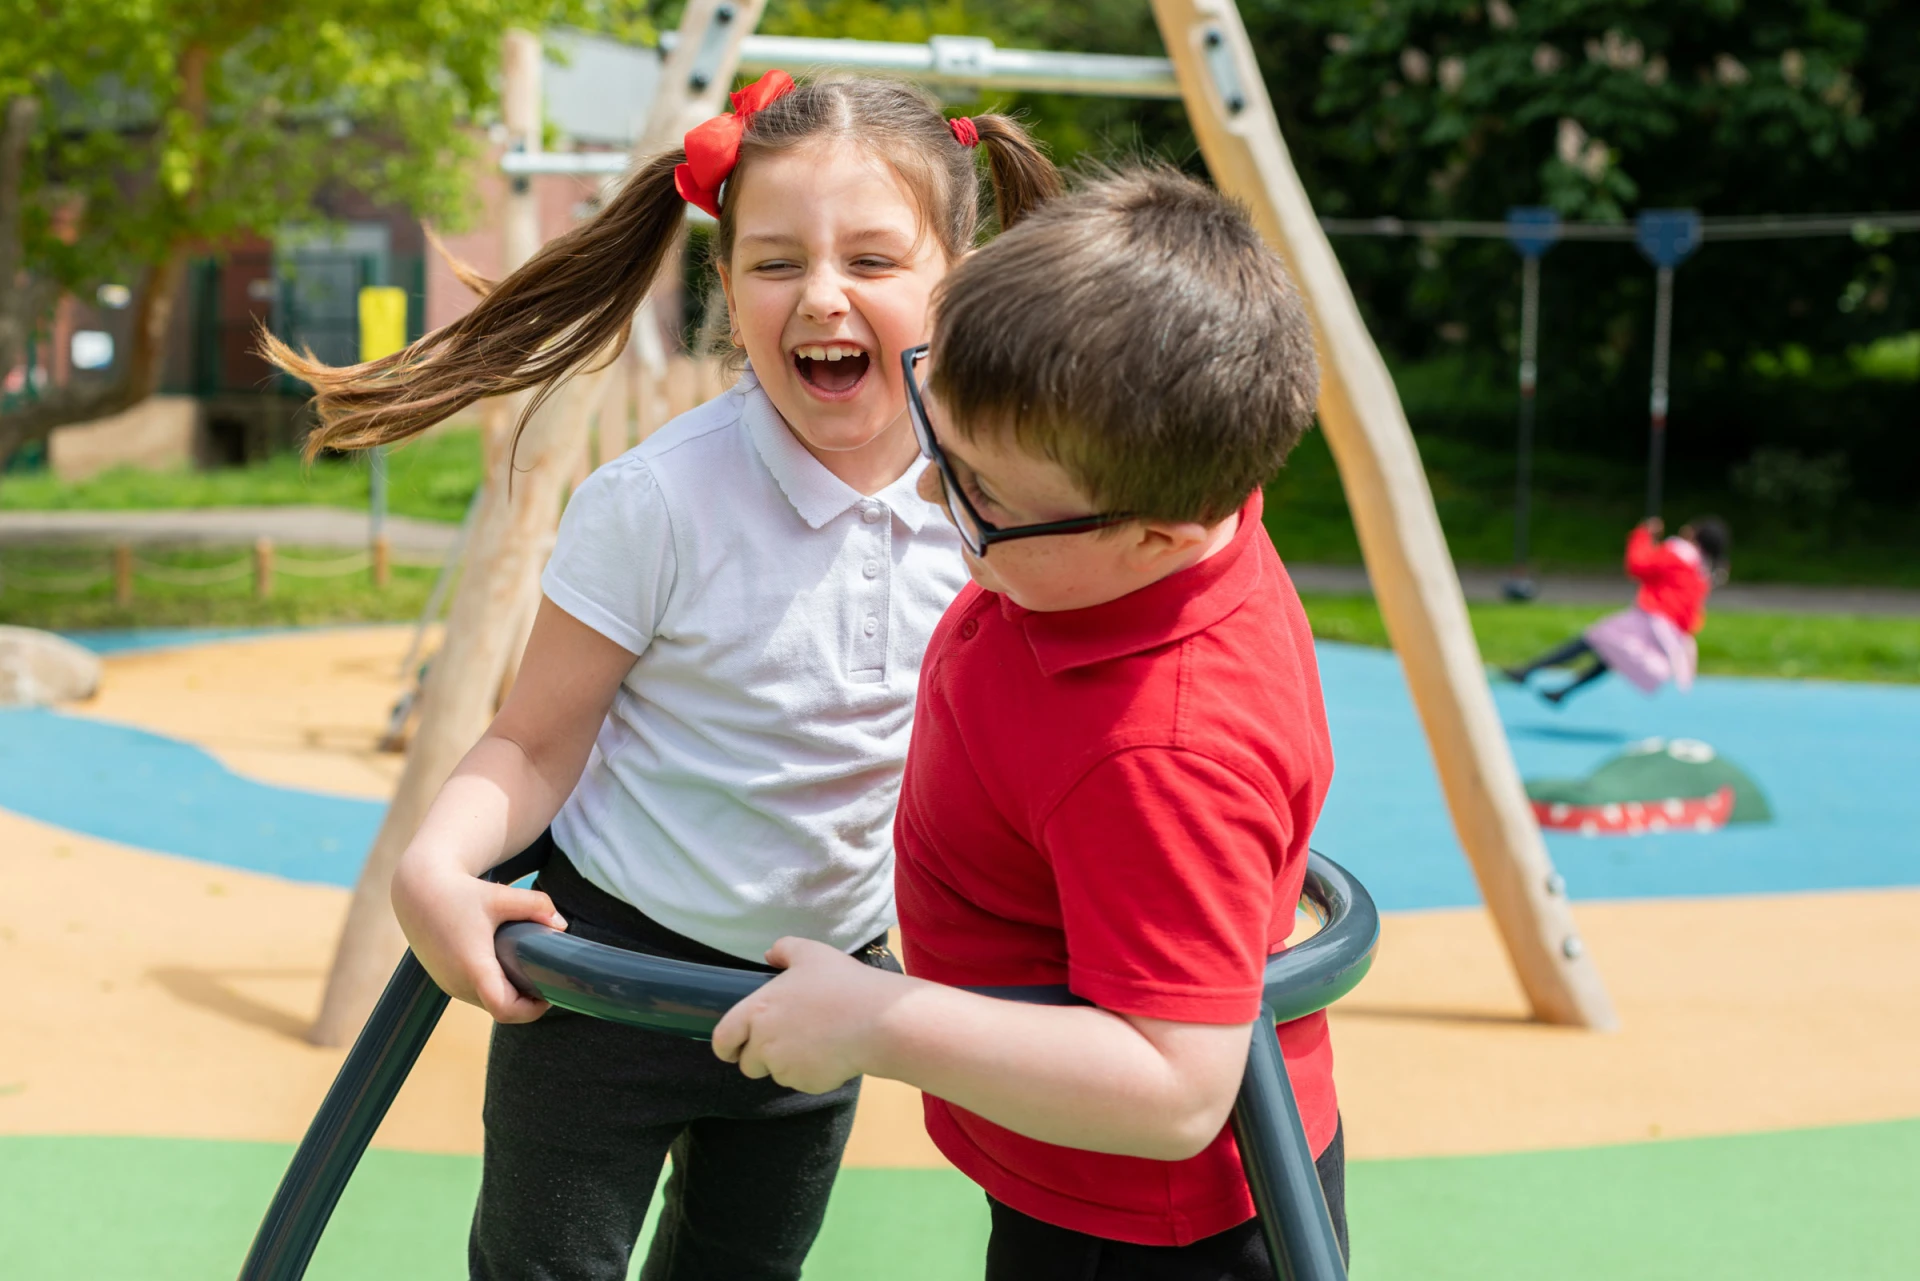 Un niño y una niña juegan en el carrusel de un parque infantil